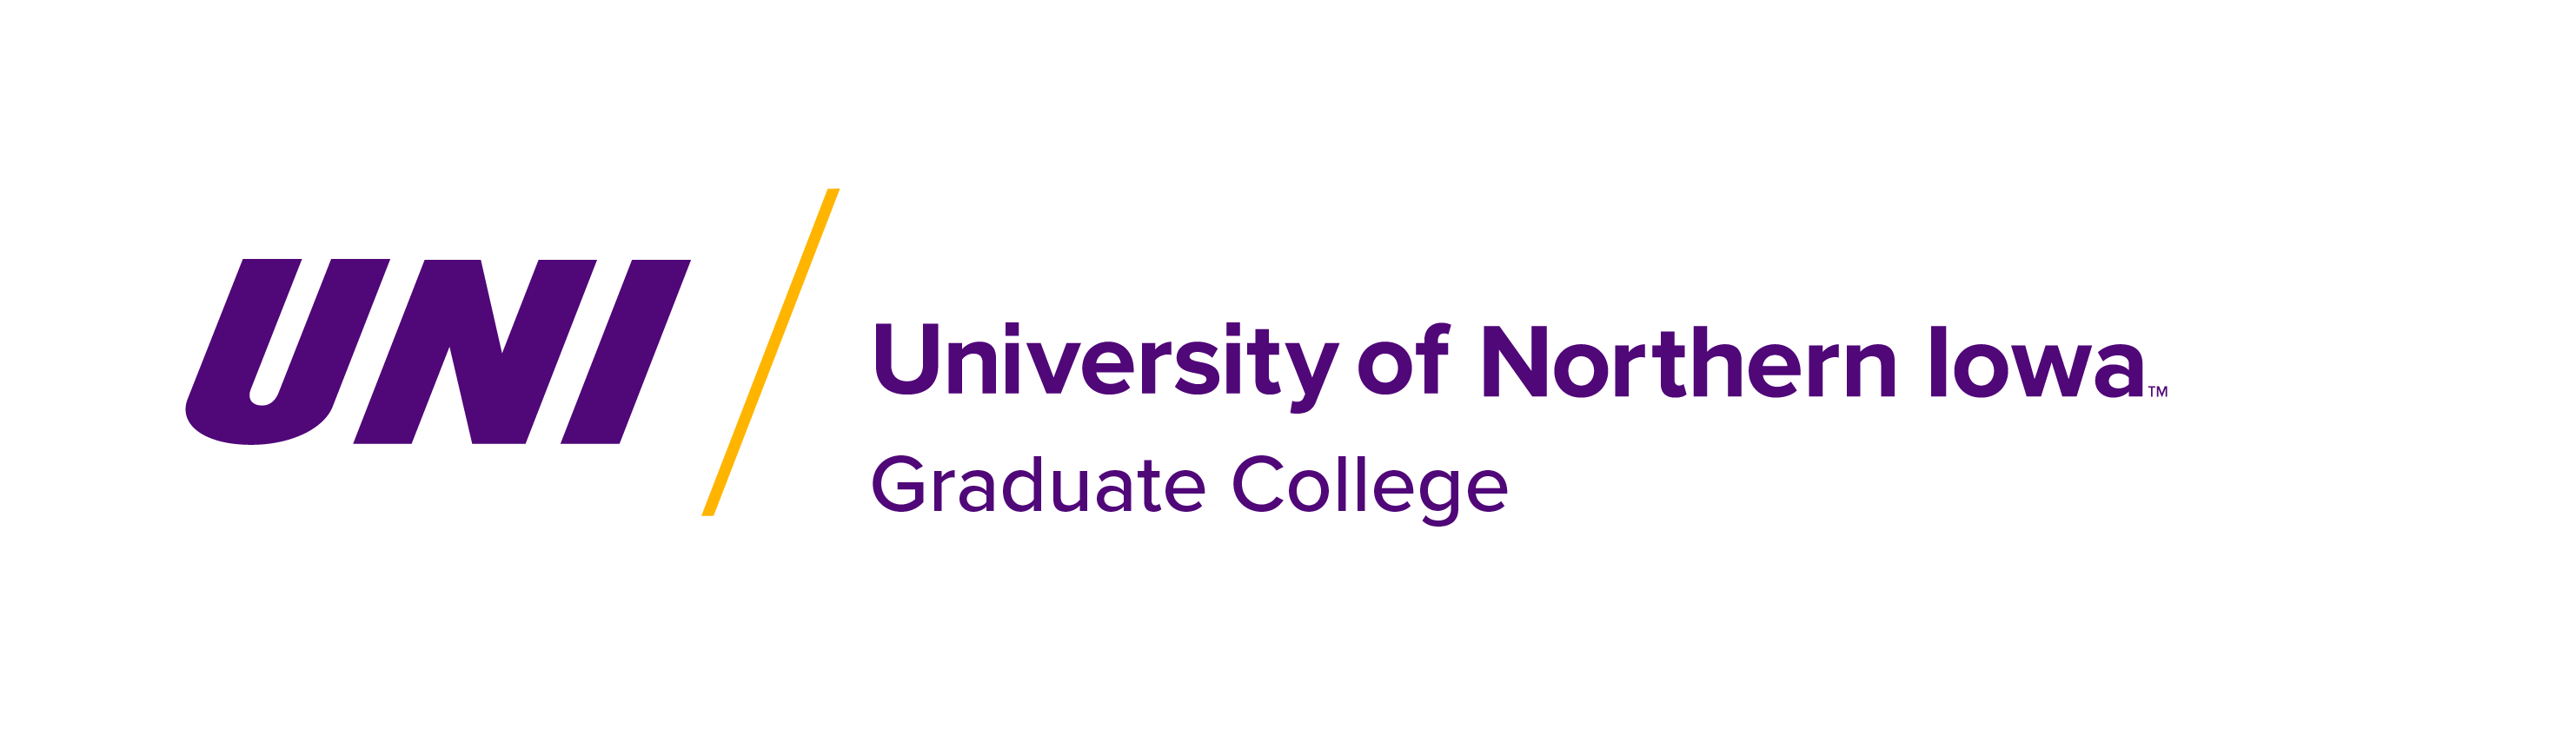 Grad College UNI main logo